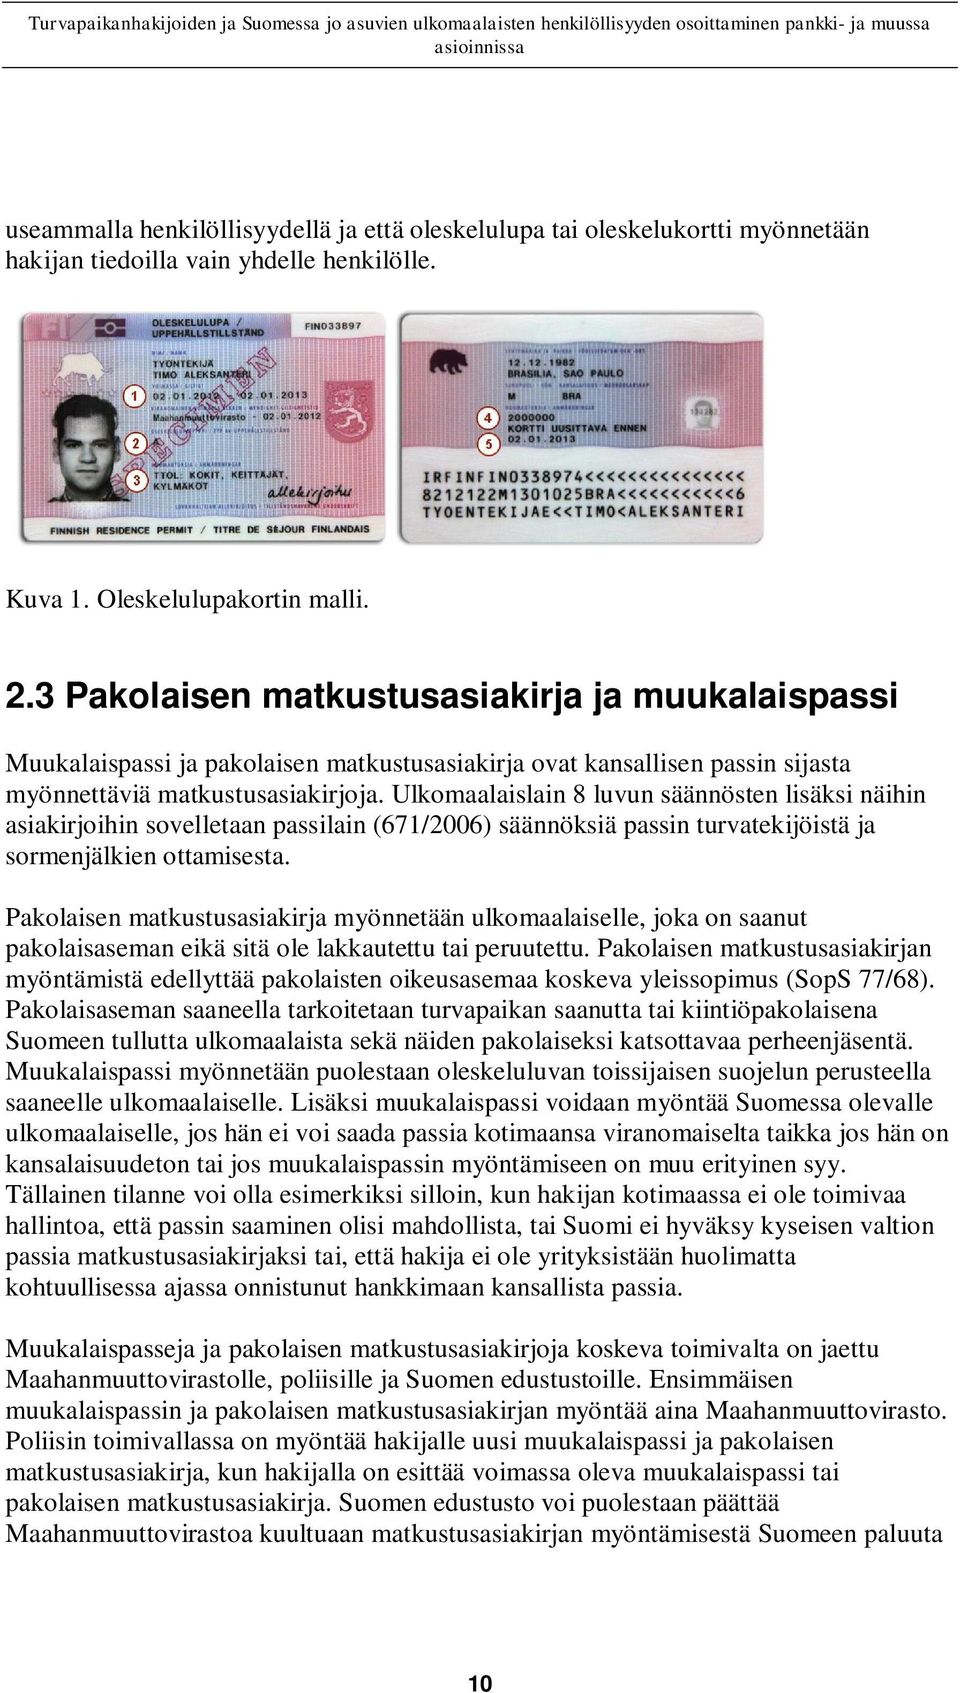 Ulkomaalaislain 8 luvun säännösten lisäksi näihin asiakirjoihin sovelletaan passilain (671/2006) säännöksiä passin turvatekijöistä ja sormenjälkien ottamisesta.